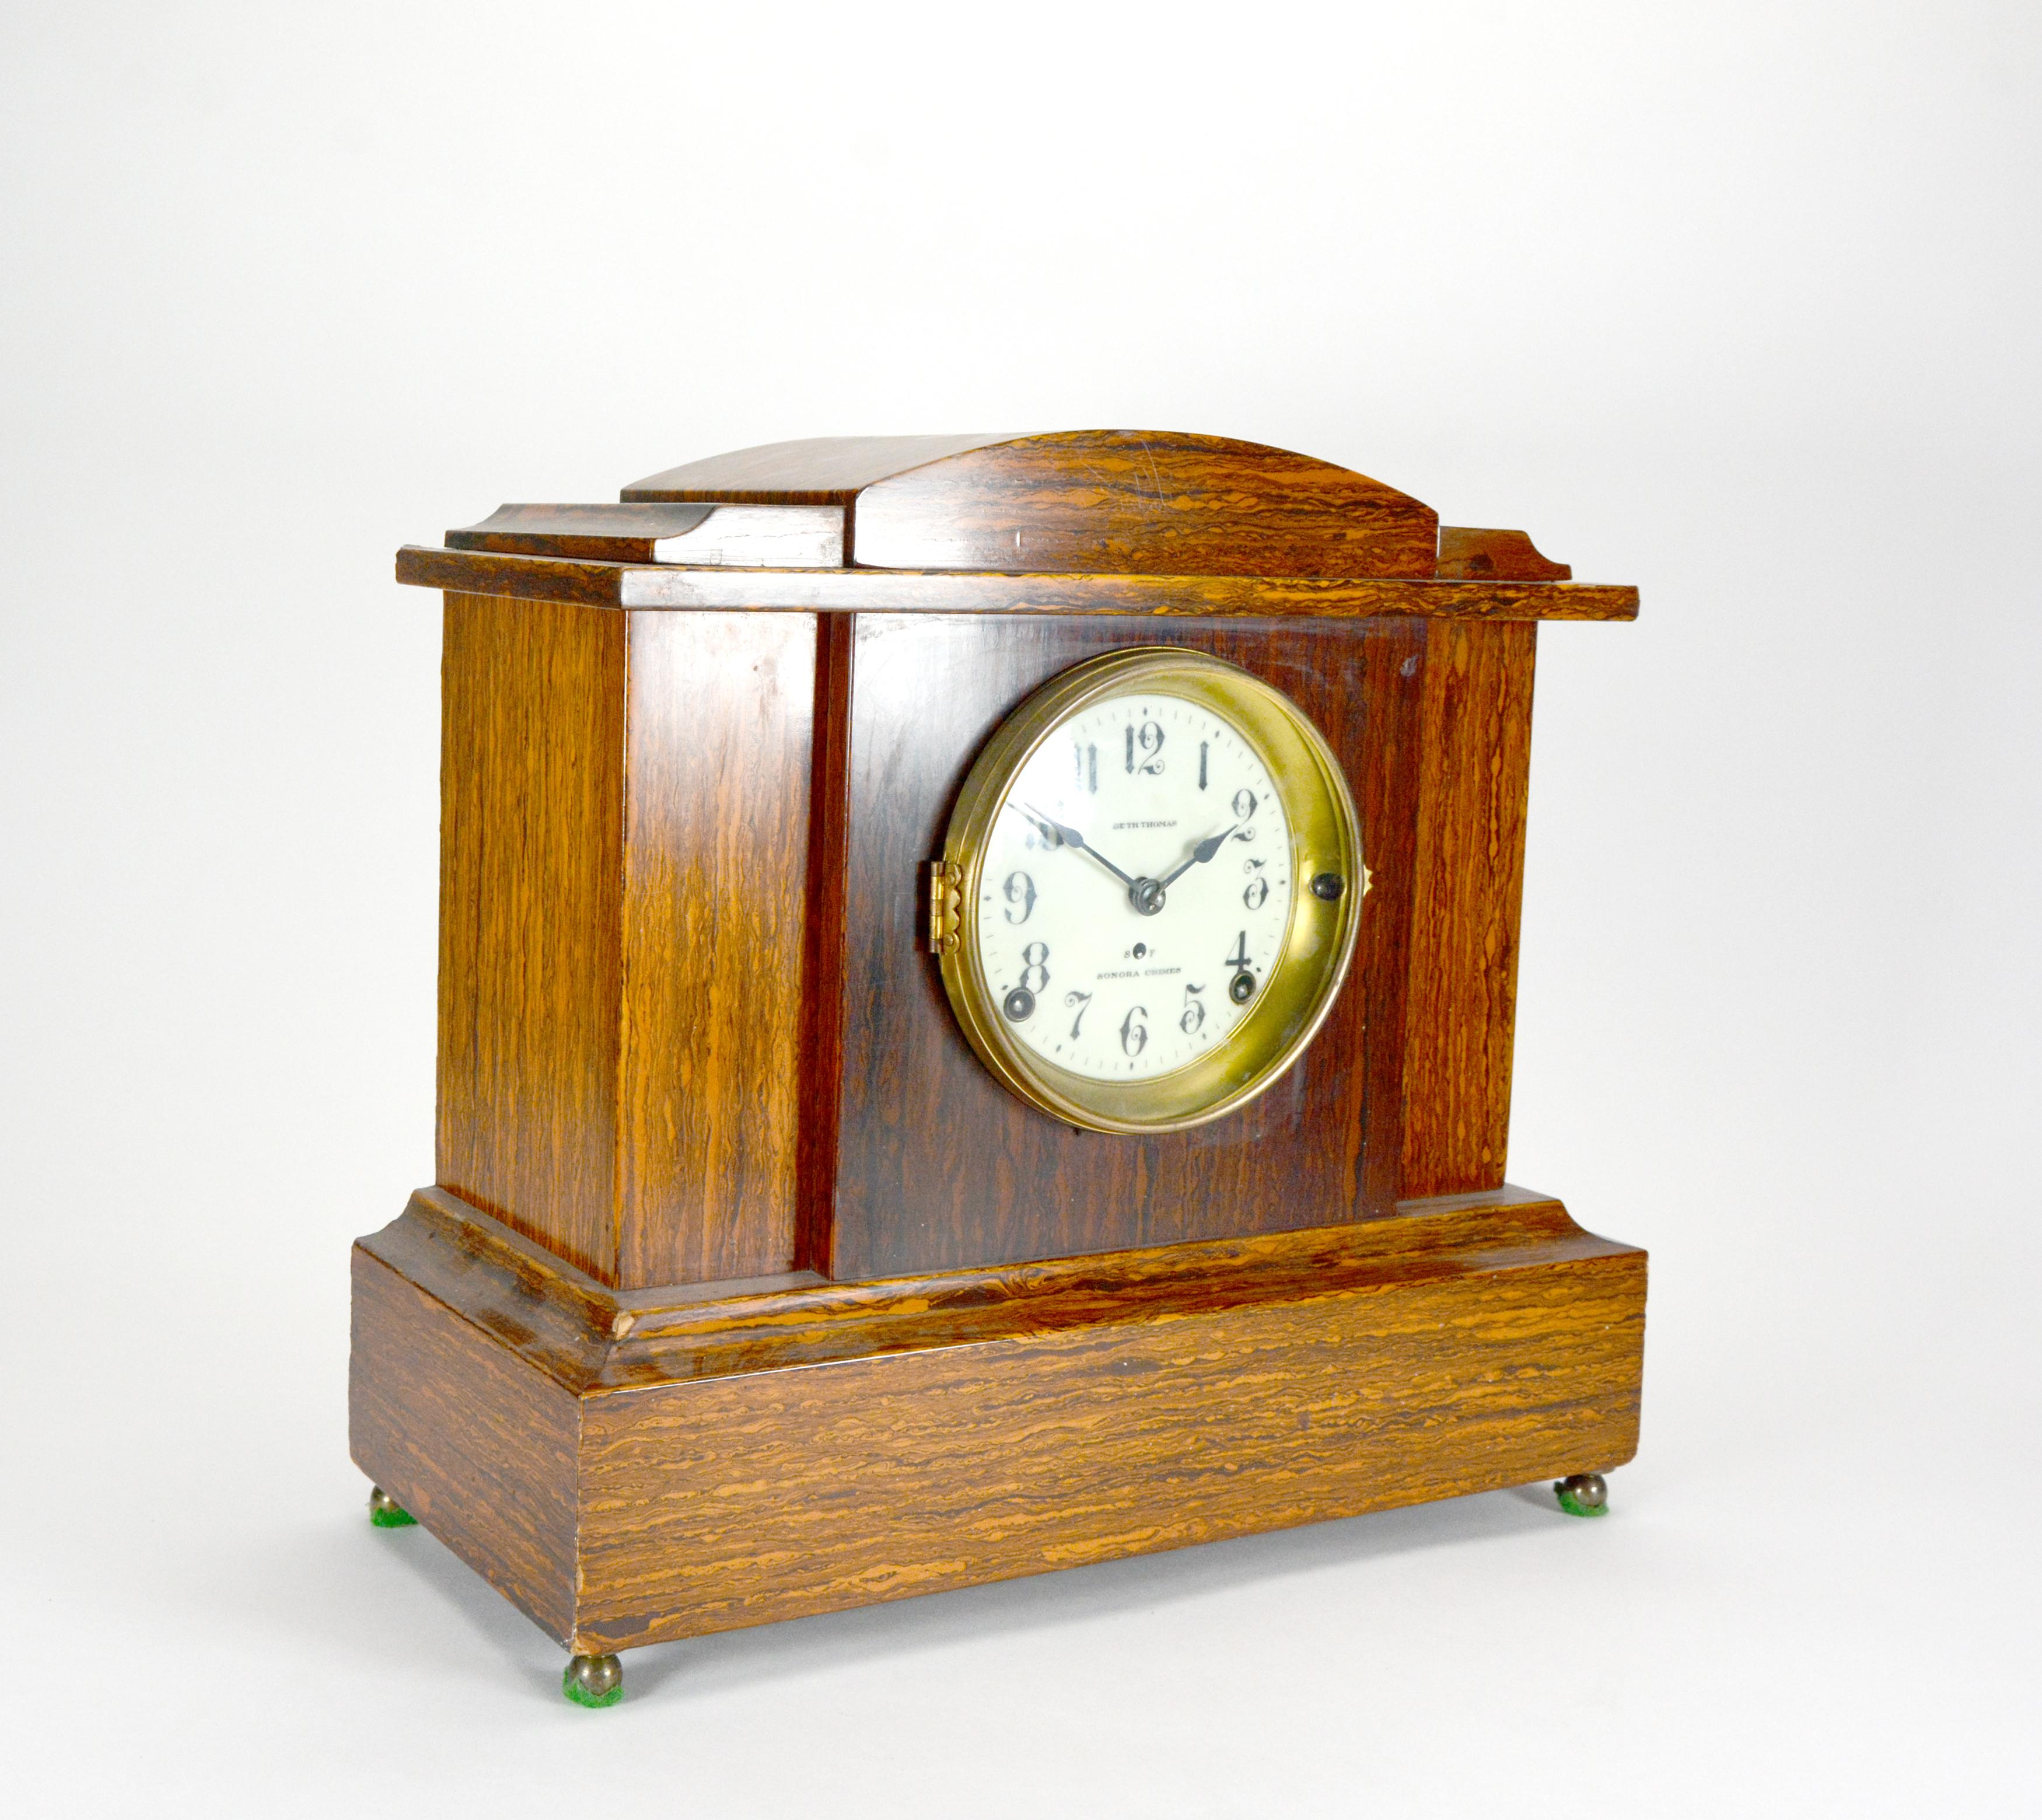 CIRCA 1920 Seth Thomas 4 Glocken Sonora Glockenspiel Wurzelholz Mantel Uhr

Hergestellt um 1920 von der amerikanischen Uhrenfirma Seth Thomas. Wunderschönes, mit Wurzelholz furniertes Holzgehäuse, in dem ein 8-Tage-Mechanismus mit Federaufzug aus